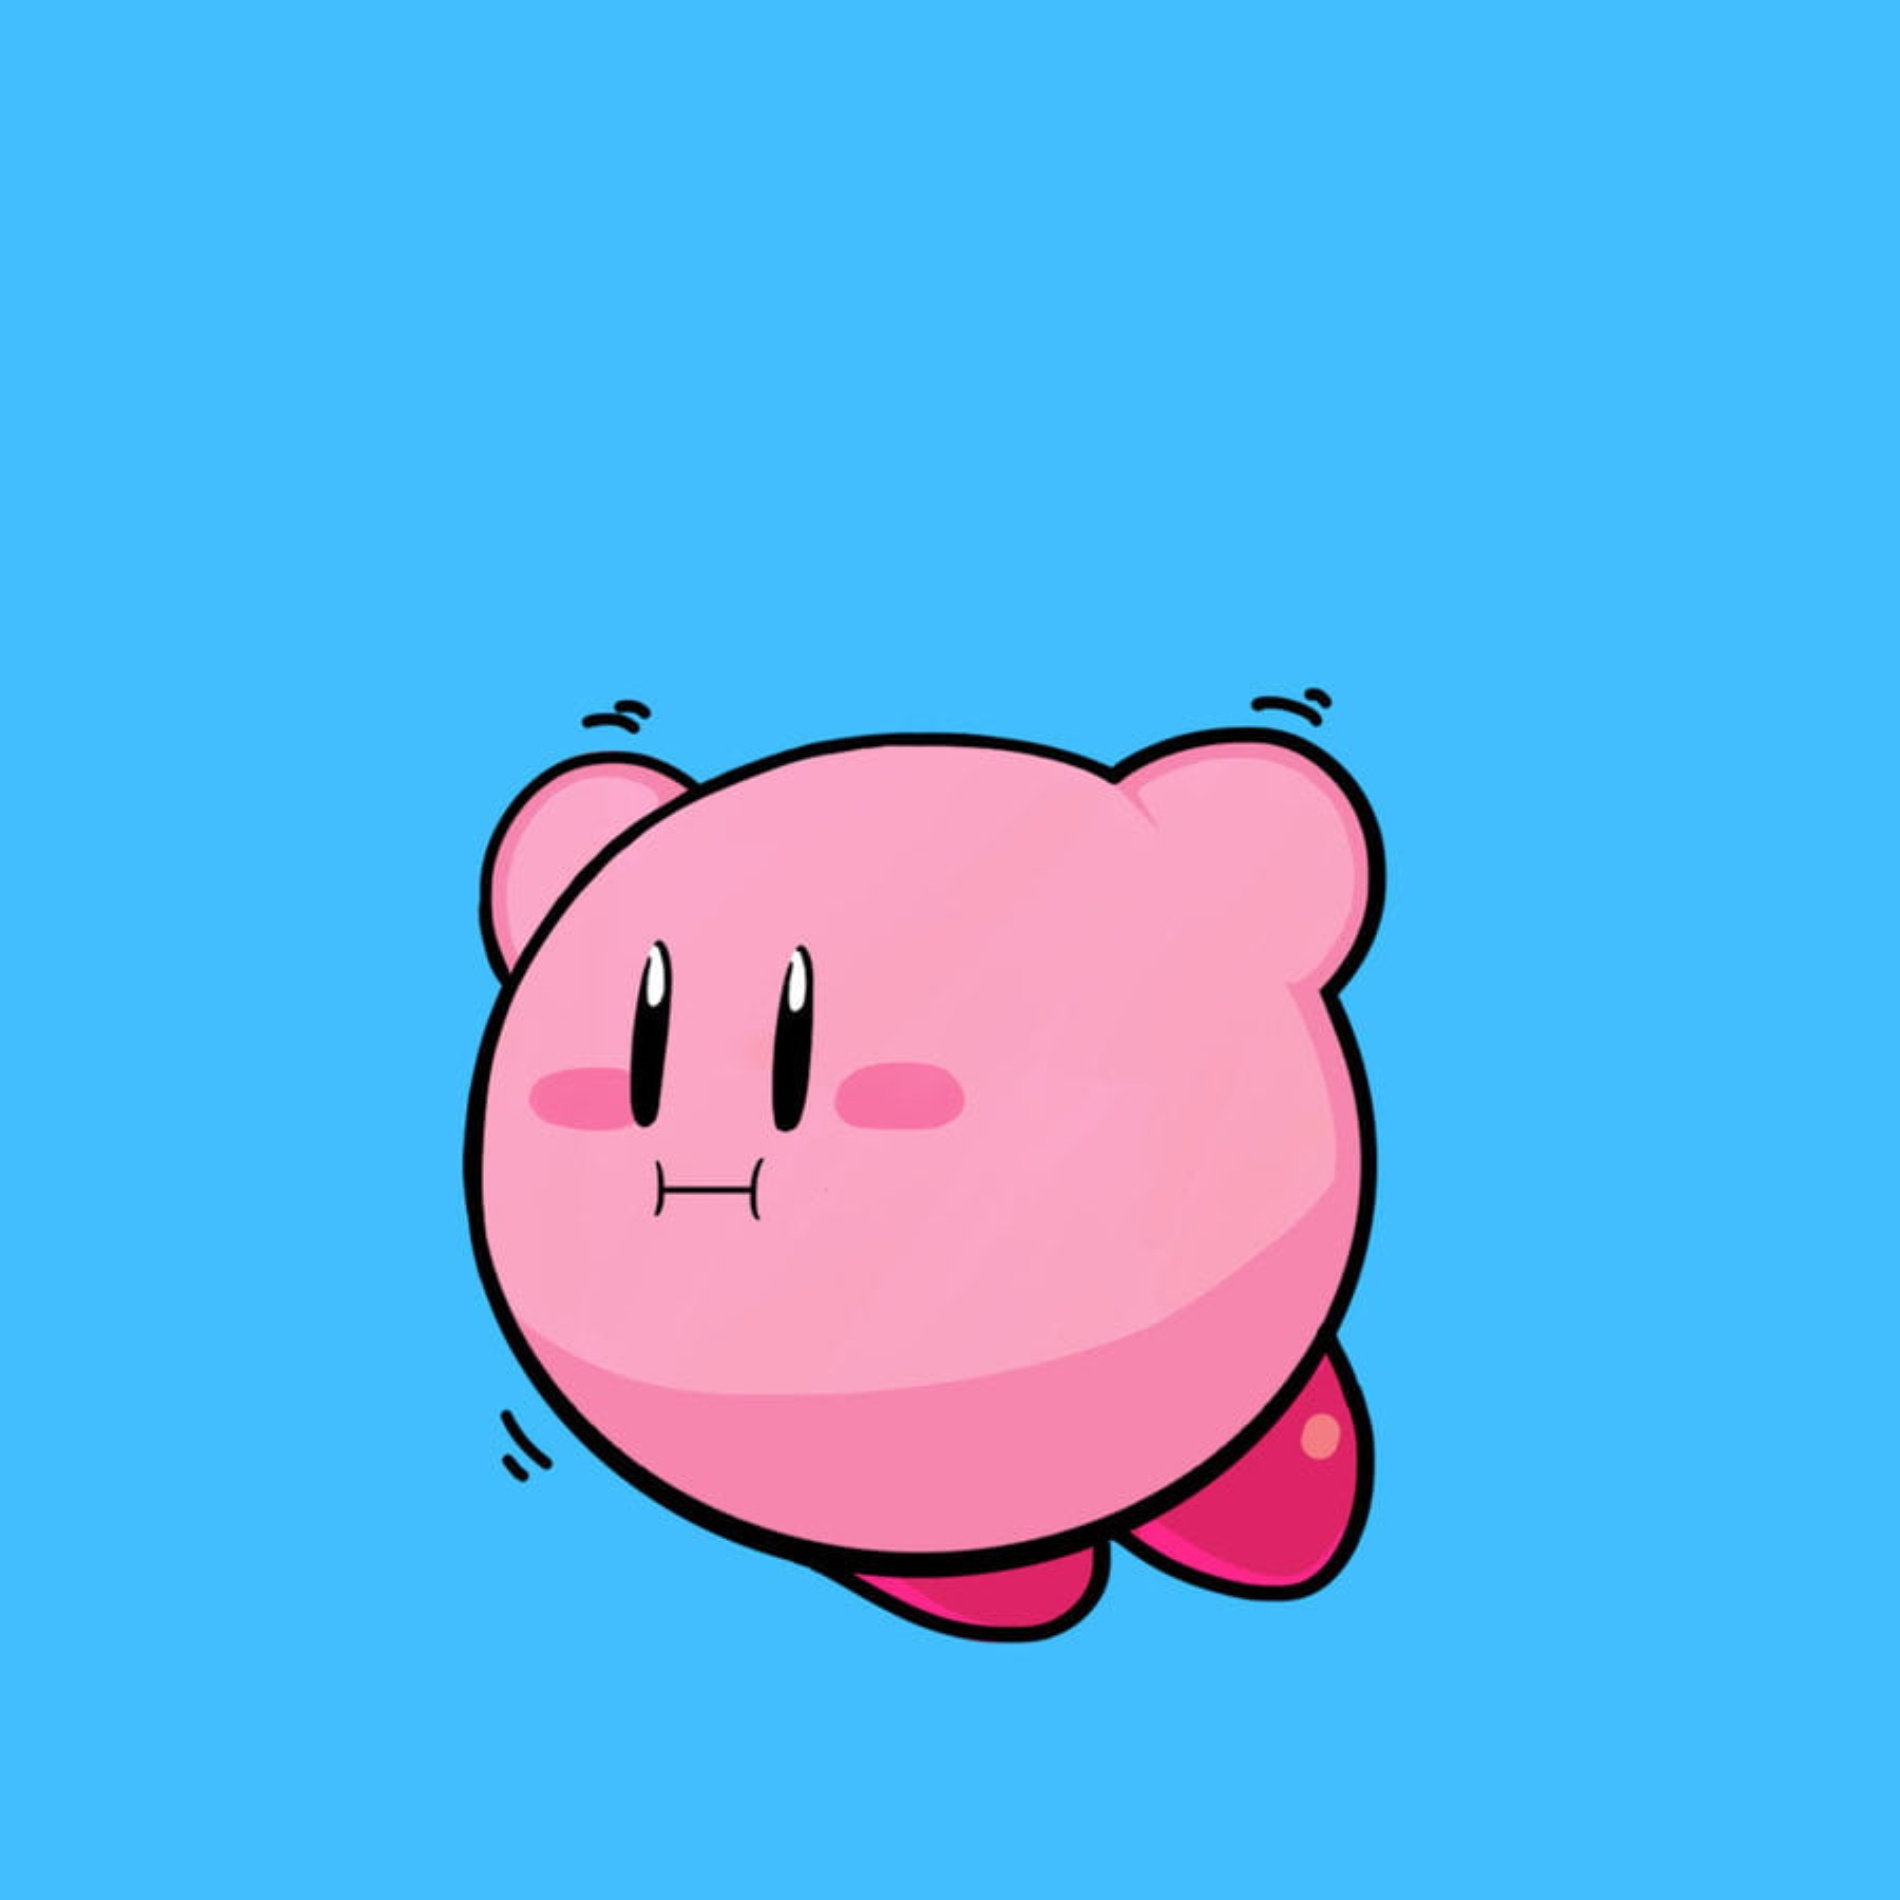 Pfp Kirby